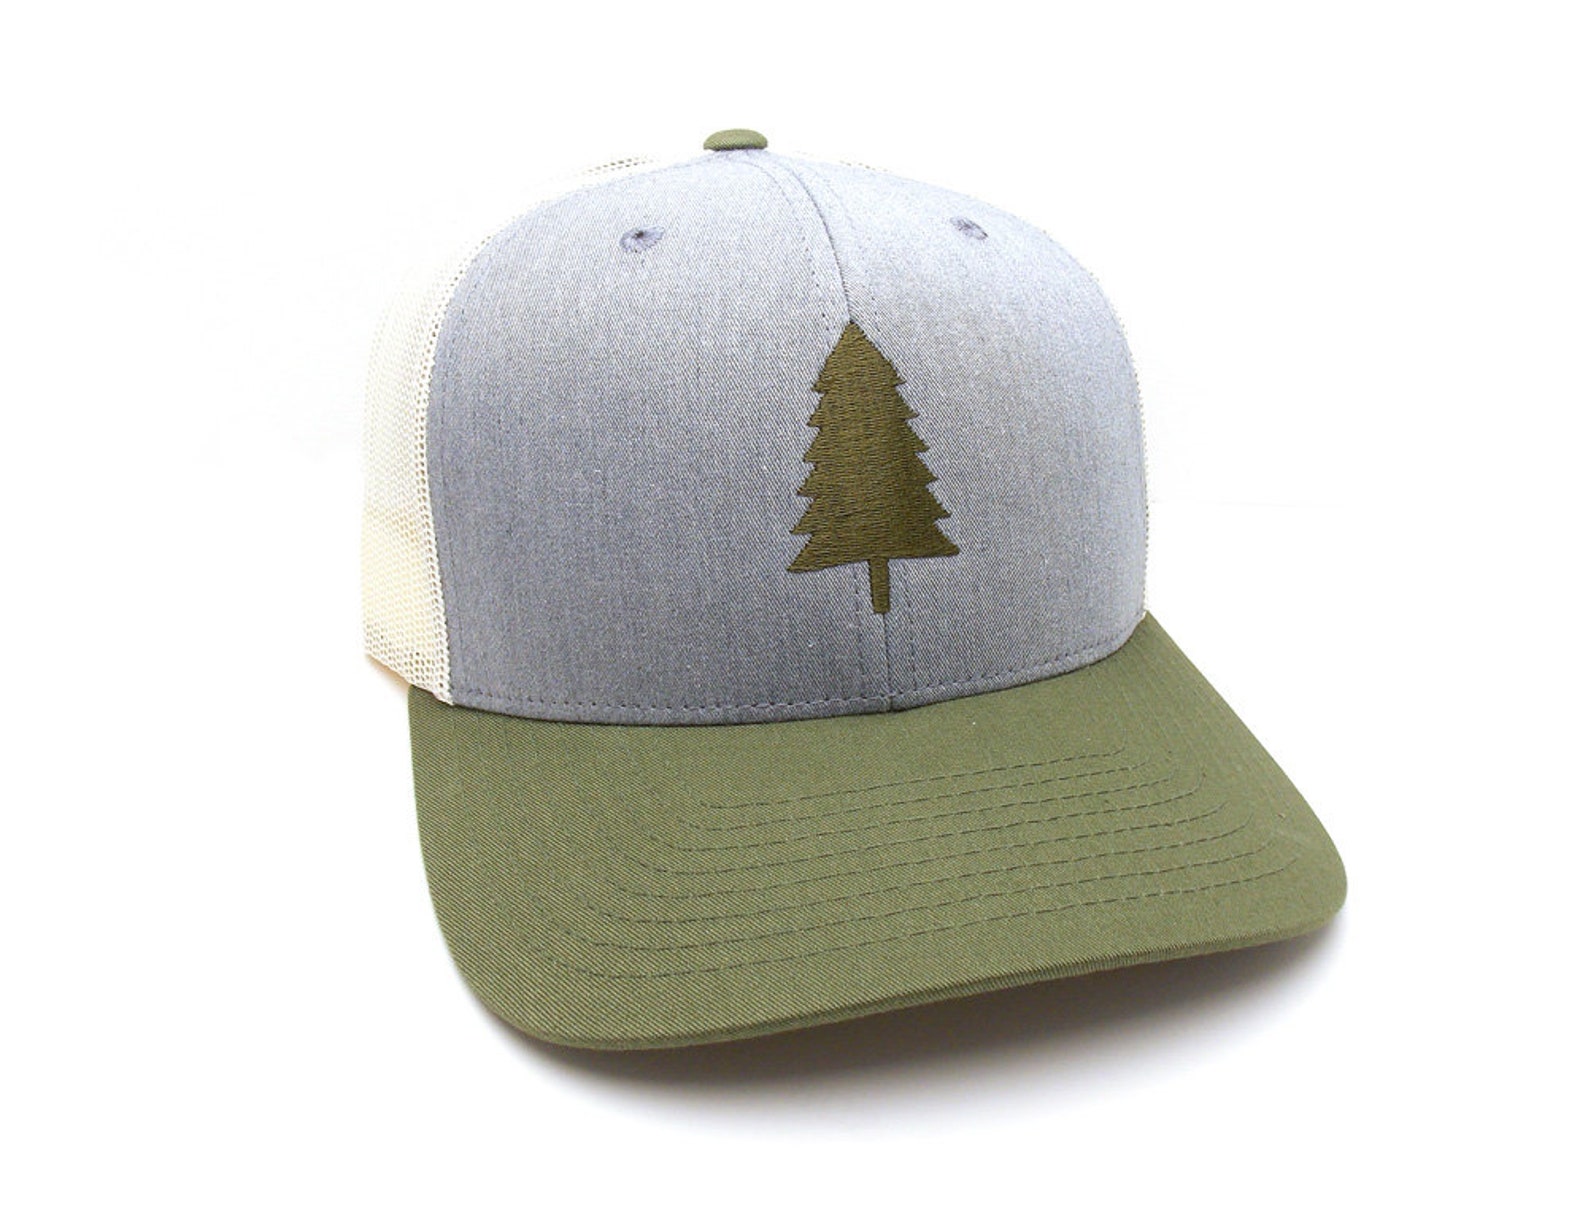 Pine Tree Trucker Hat Wilderness Area Mesh Back Trucker | Etsy